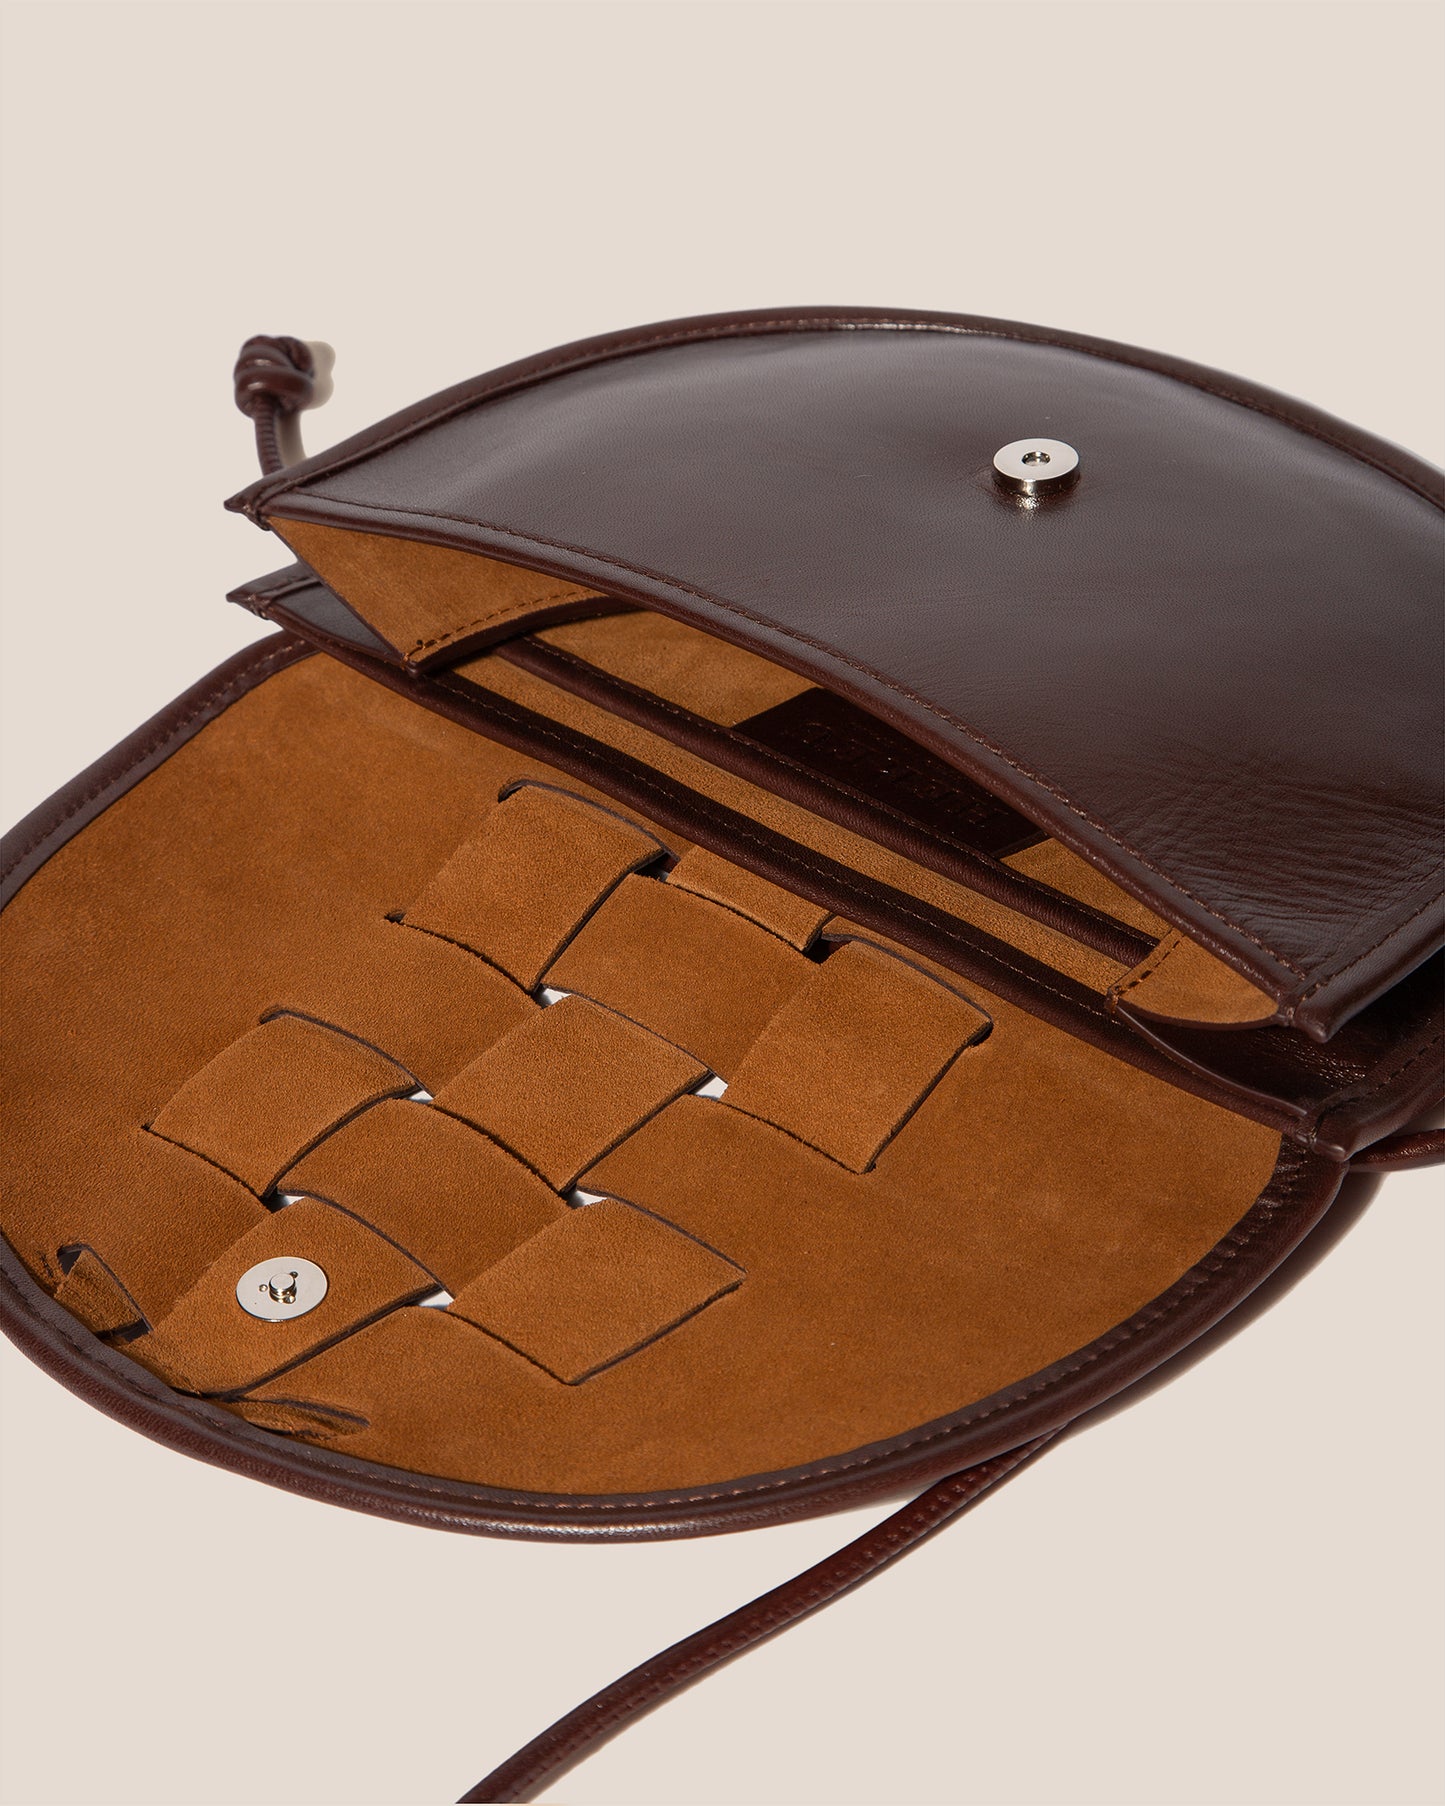 LLUNA NOVA - Interwoven Front Detail Crossbody Bag